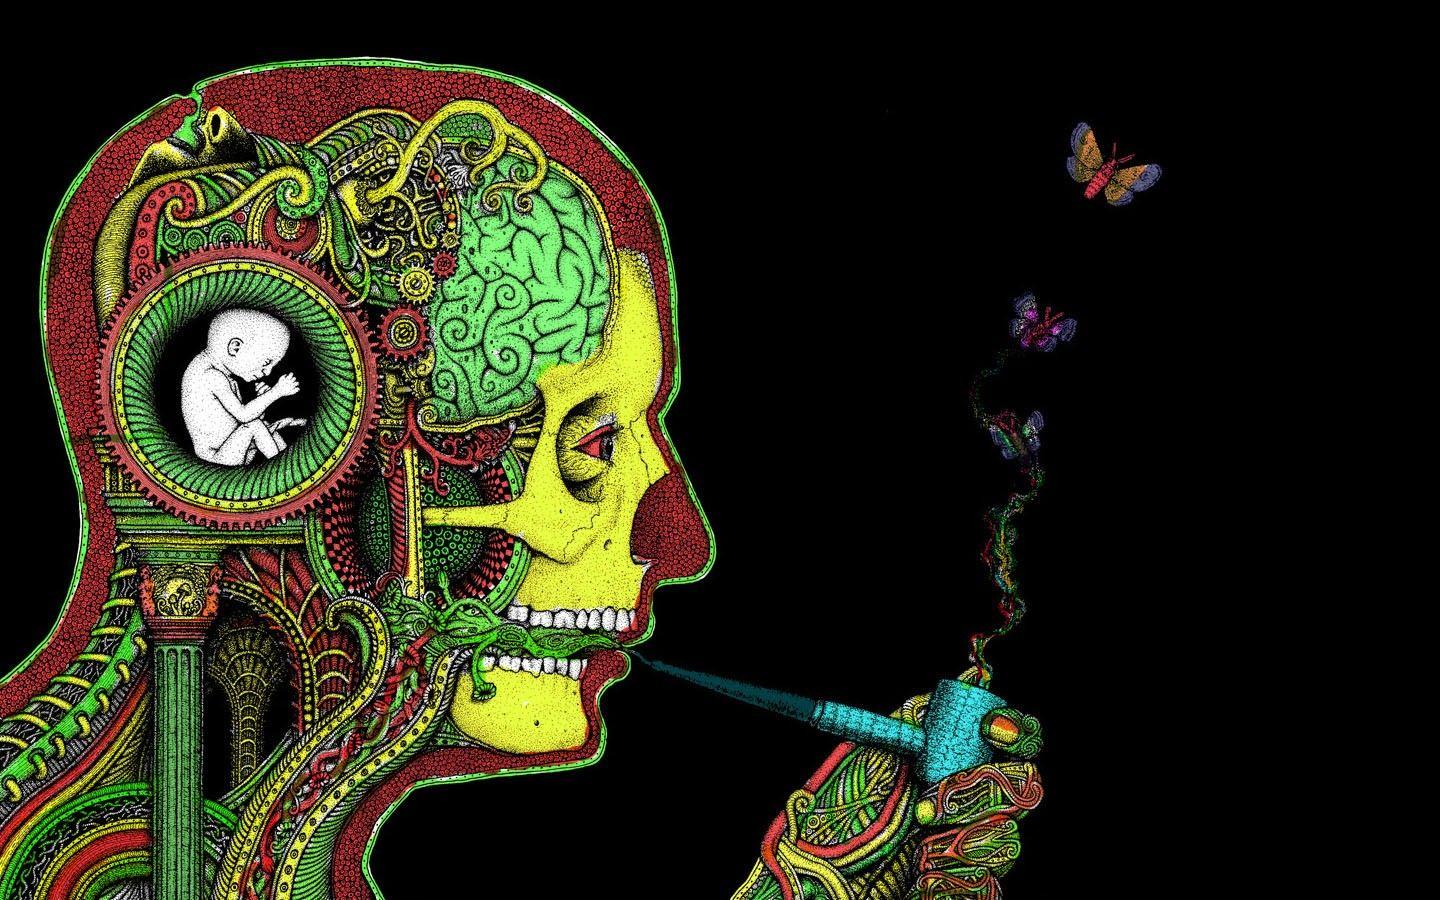 Wallpaper, illustration, smoking, drugs, biology, 1440x900 px